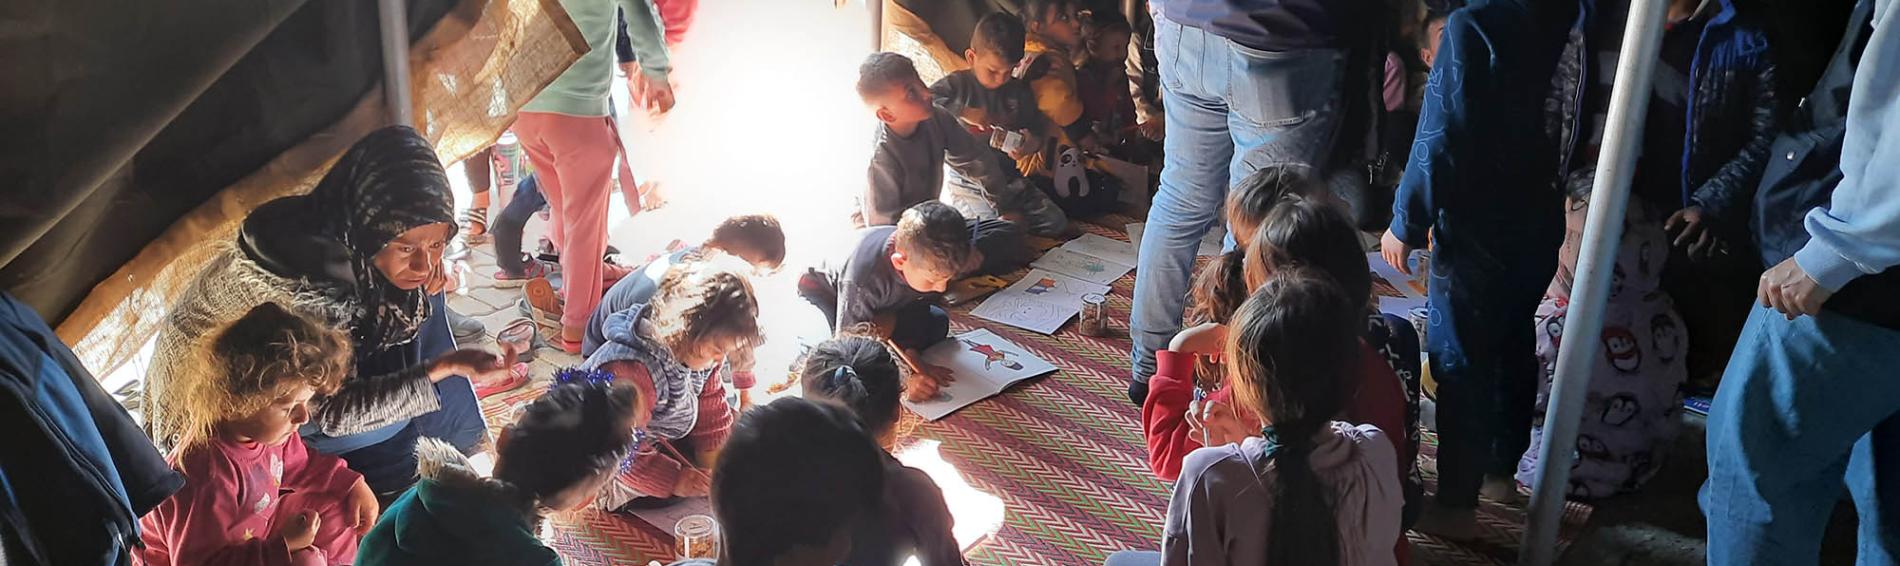 Eine Malwerkstatt für Kinder in Hatay als Schutzraum vor Gewalt und Übergriffen. Foto: Ärzte der Welt / DDD